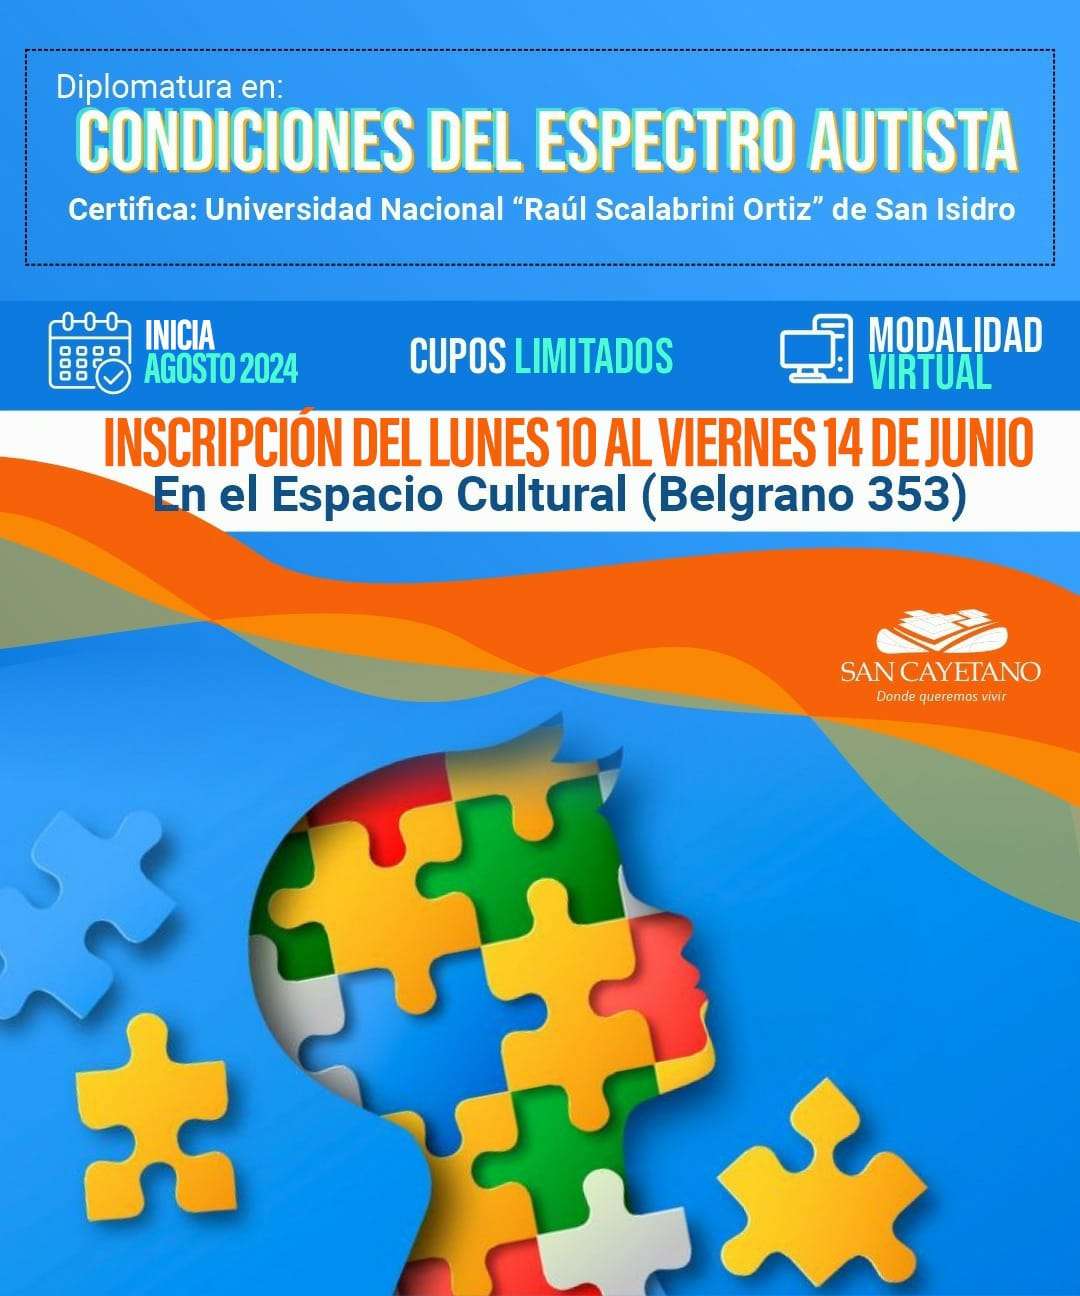 Abren las inscripciones para la Diplomatura en las "Condiciones del espectro autista" en San Cayetano